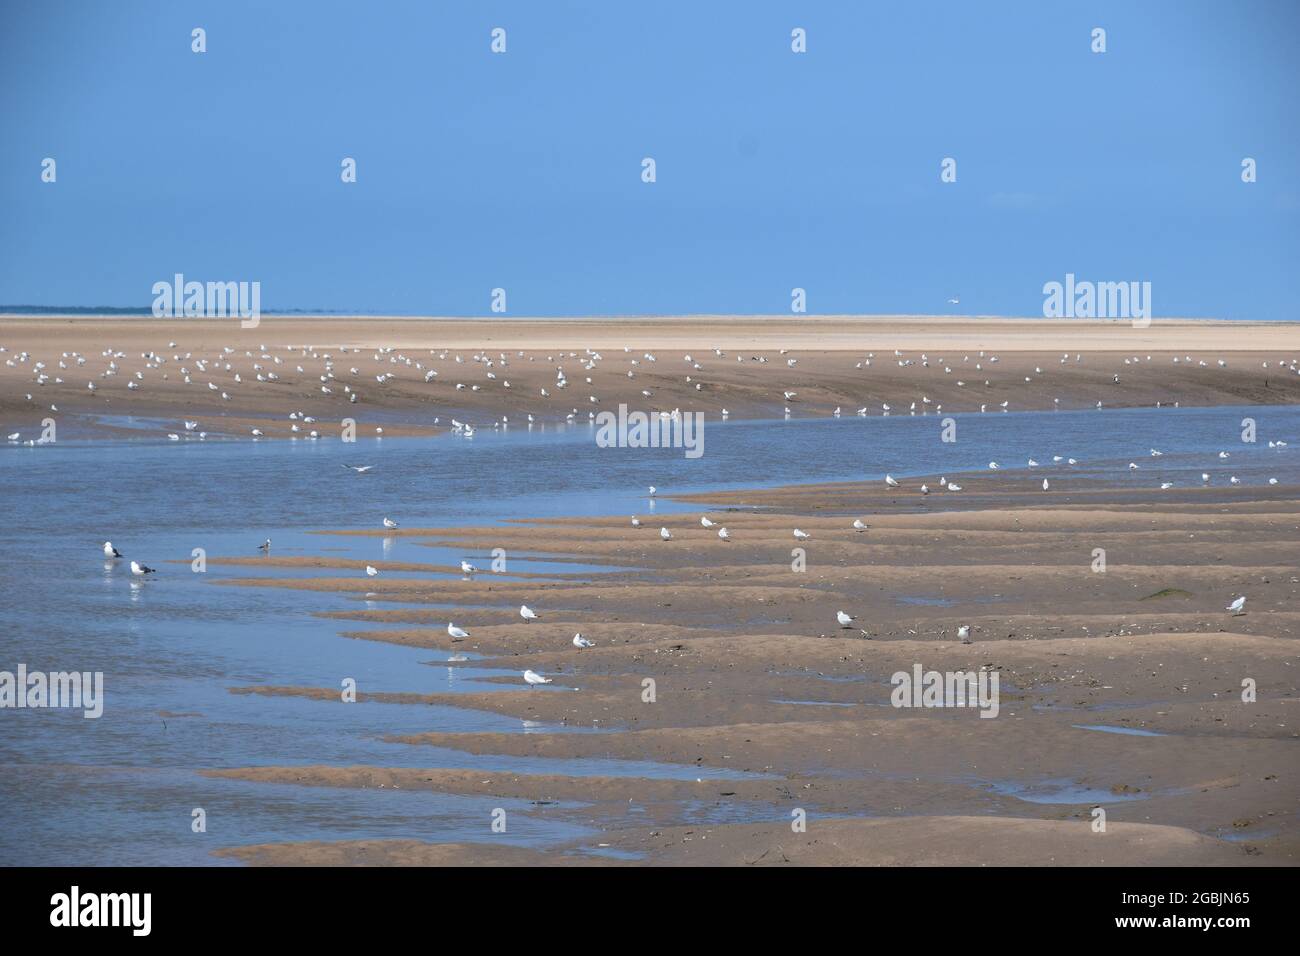 La marea si trova sulla riva dell'estuario del Mersey e mostra le rive di sabbia esposte, gli uccelli marini, il fiume Alt affluente sotto il cielo blu e la luce solare estiva. Foto Stock